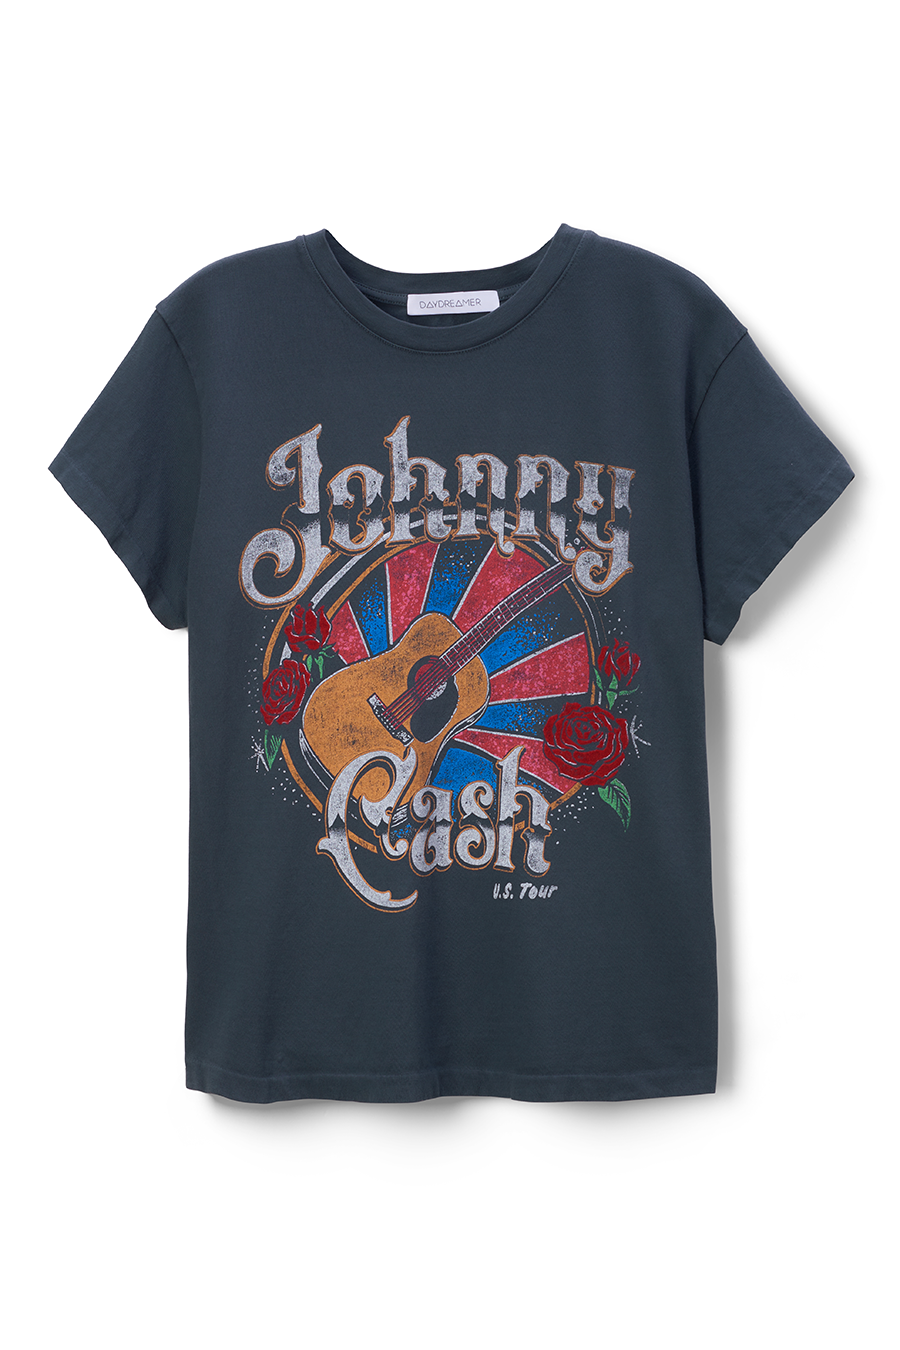 Johnny Cash Martin Guitar Tee | Vintage Black - Main Image Number 1 of 1